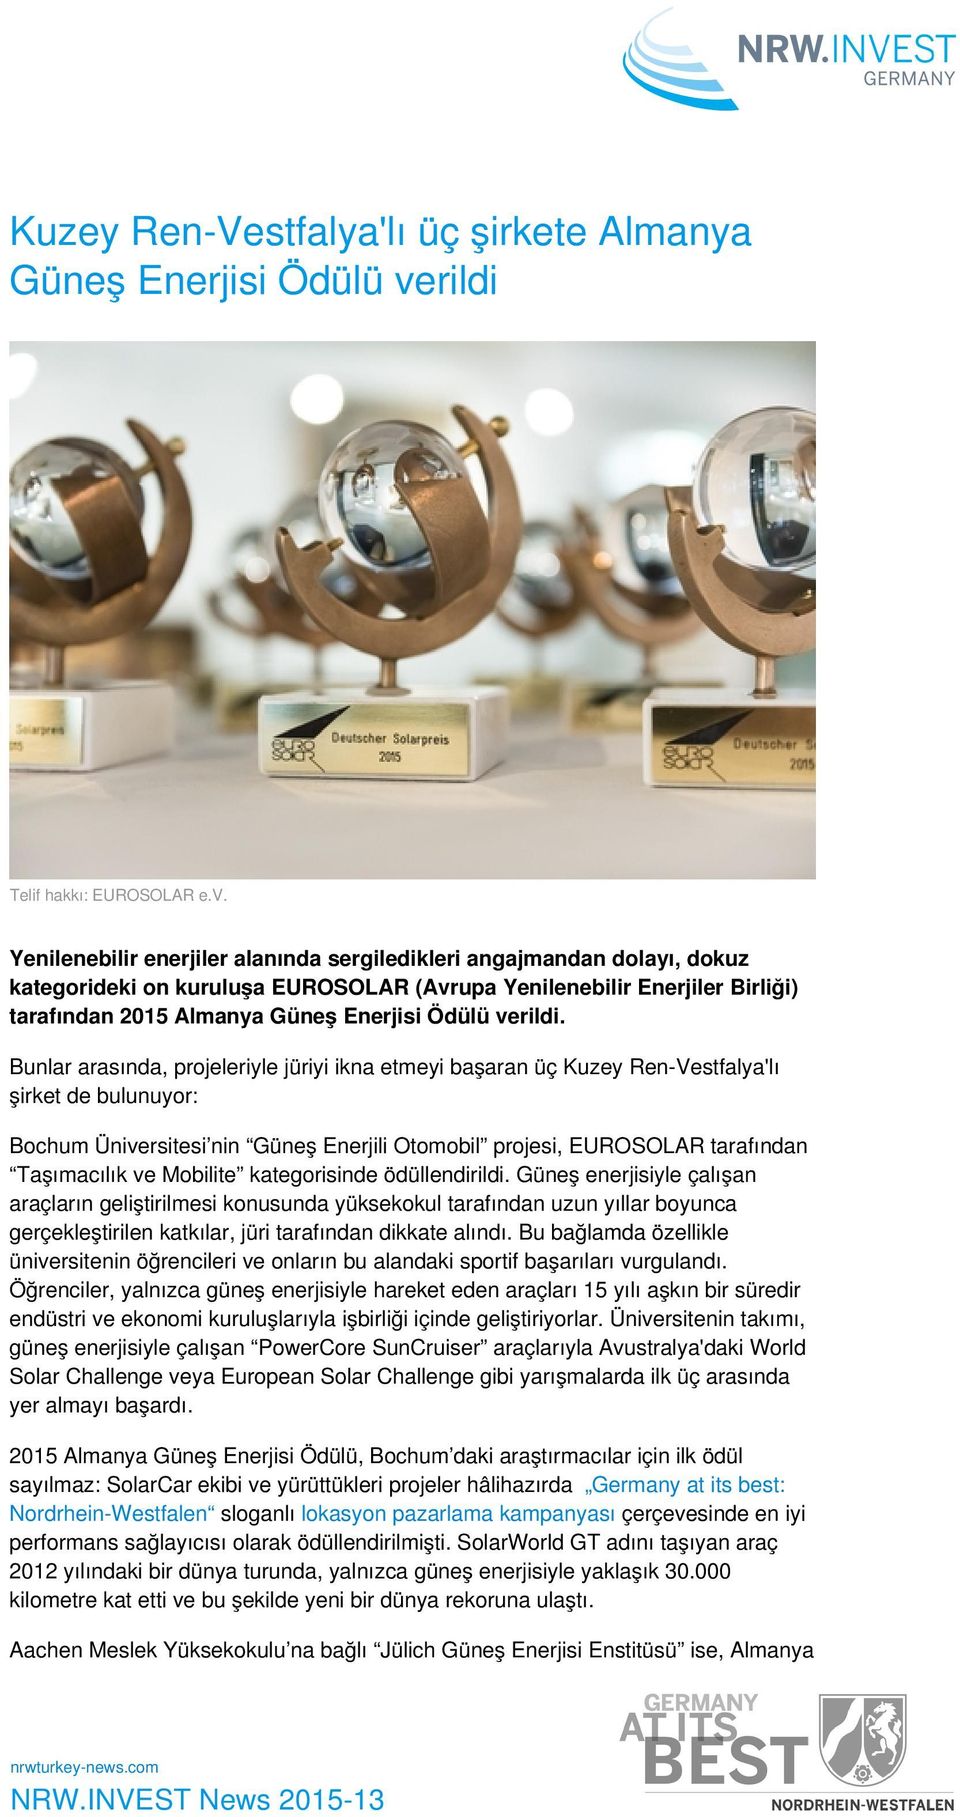 Yenilenebilir enerjiler alanında sergiledikleri angajmandan dolayı, dokuz kategorideki on kuruluşa EUROSOLAR (Avrupa Yenilenebilir Enerjiler Birliği) tarafından 2015 Almanya Güneş Enerjisi Ödülü